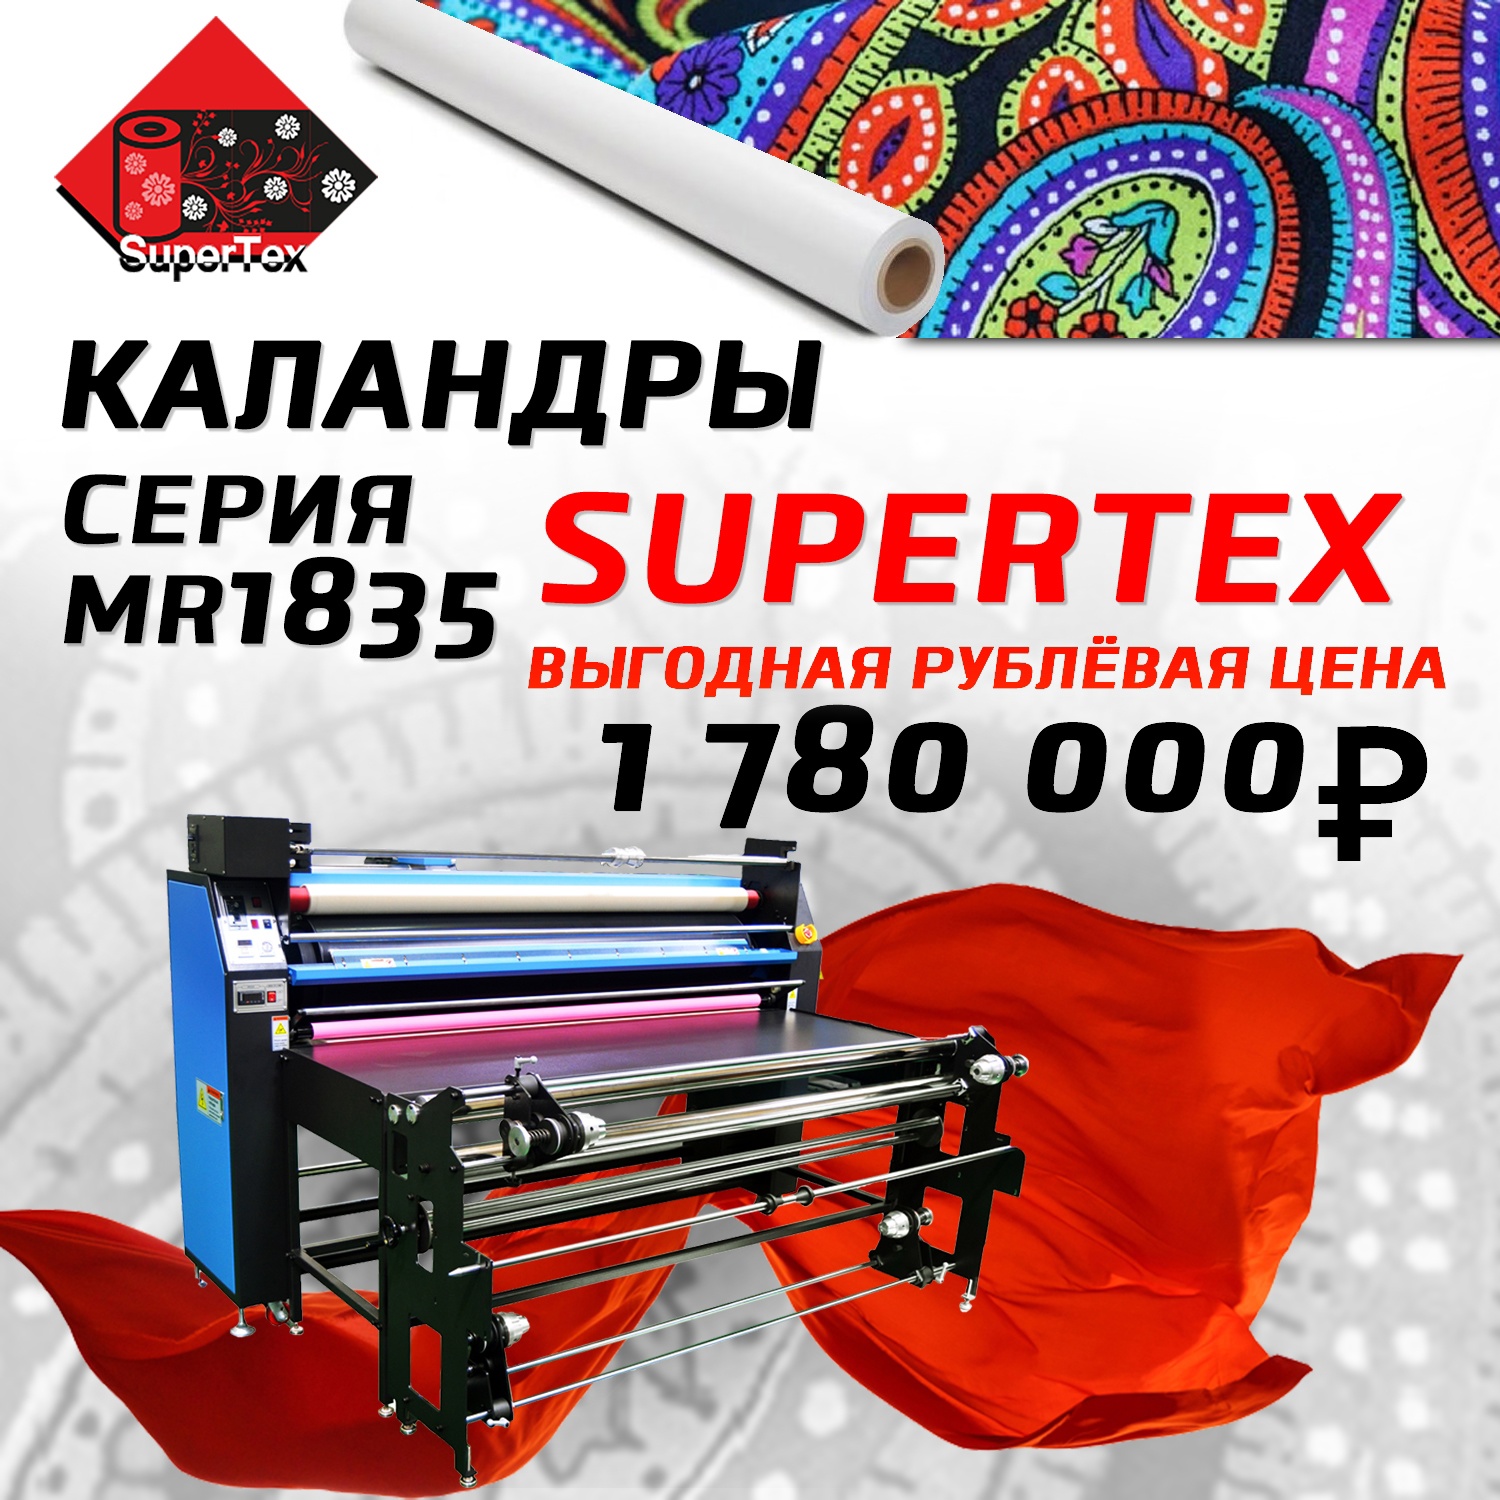 Выгодная рублёвая цена на каландровый термопресс Supertex MR1835 до конца текущего года!